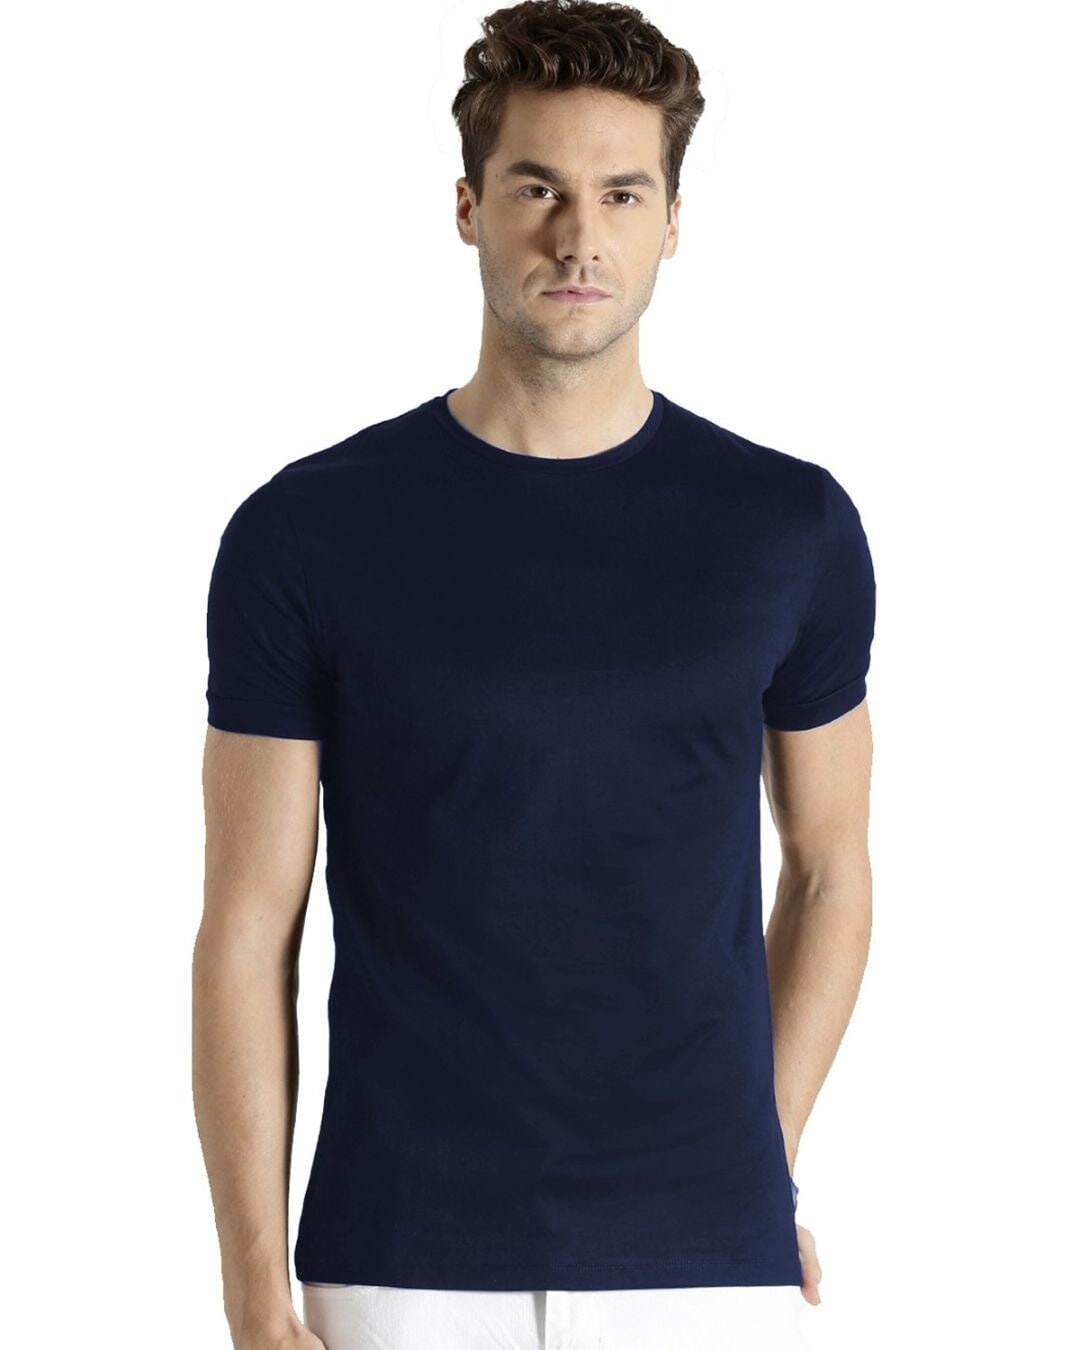 Shop Men's Cotton Plain T-shirt